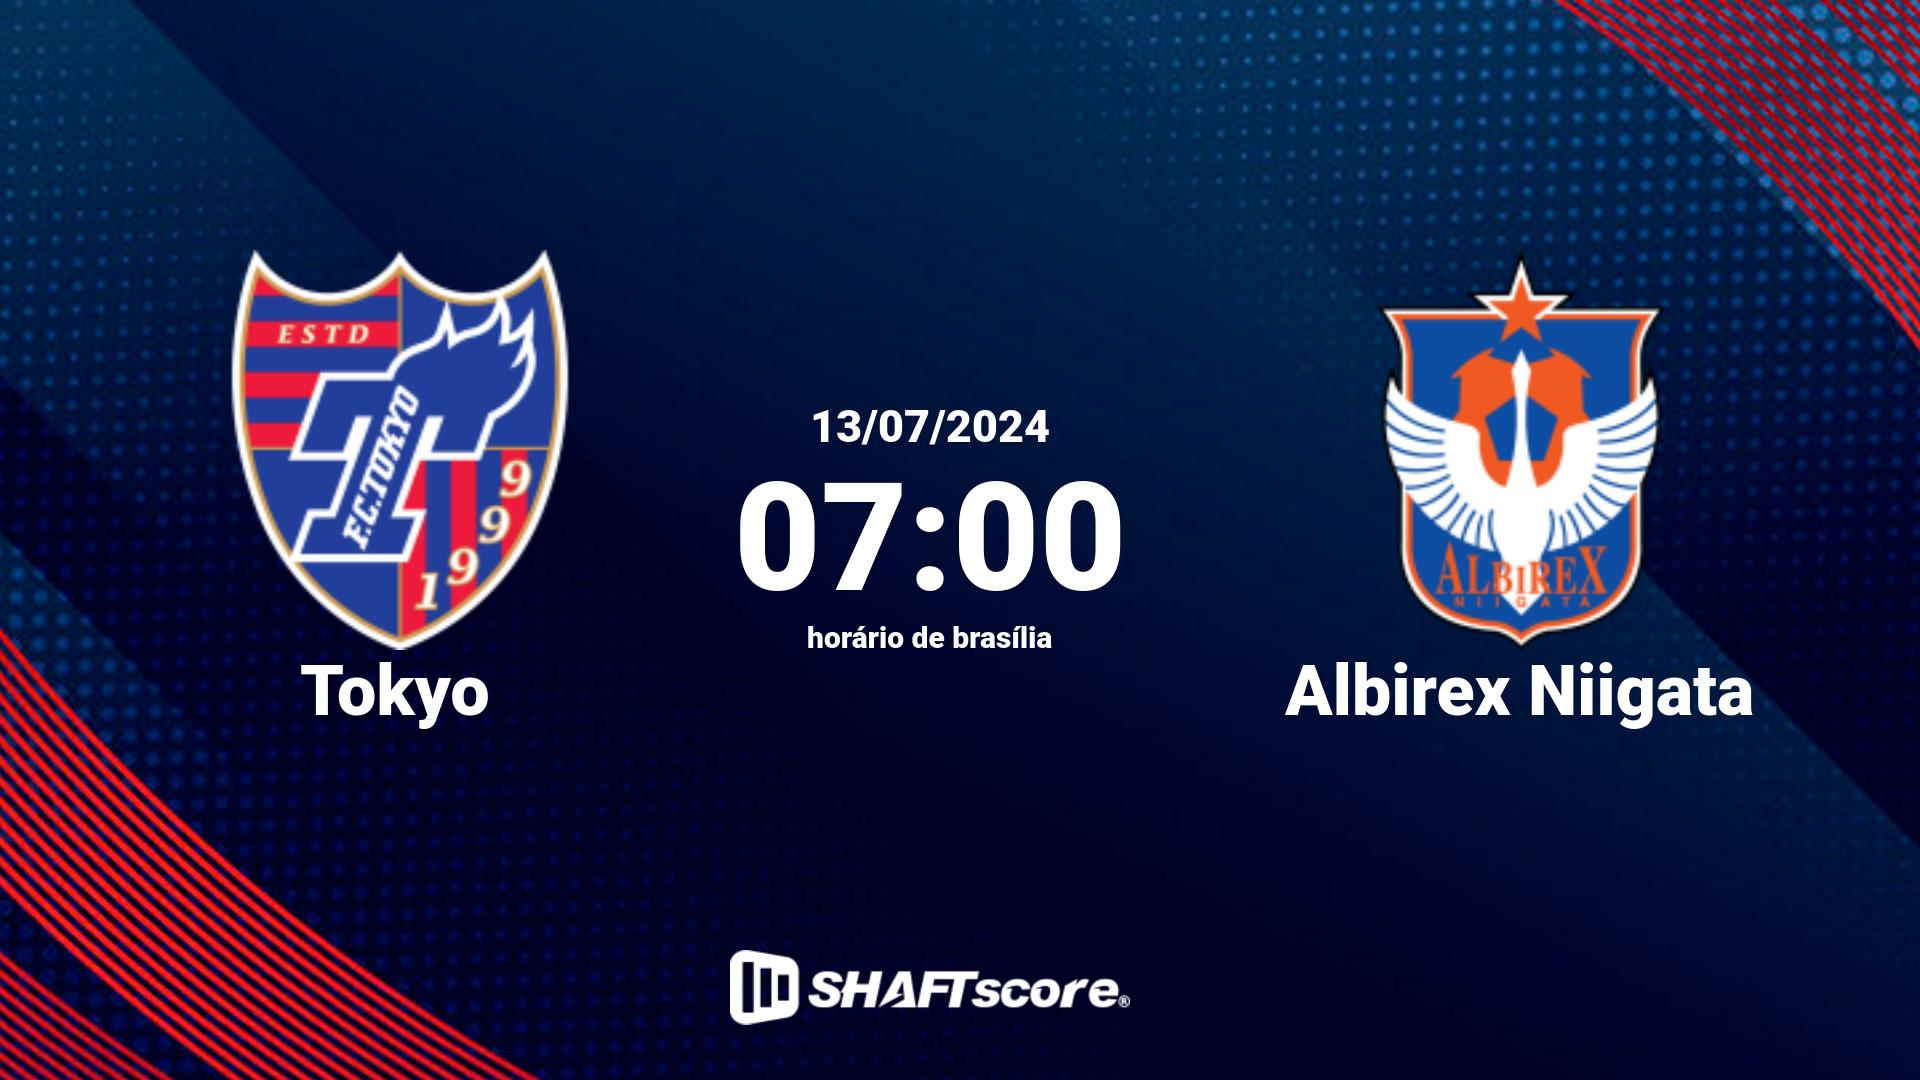 Estatísticas do jogo Tokyo vs Albirex Niigata 13.07 07:00